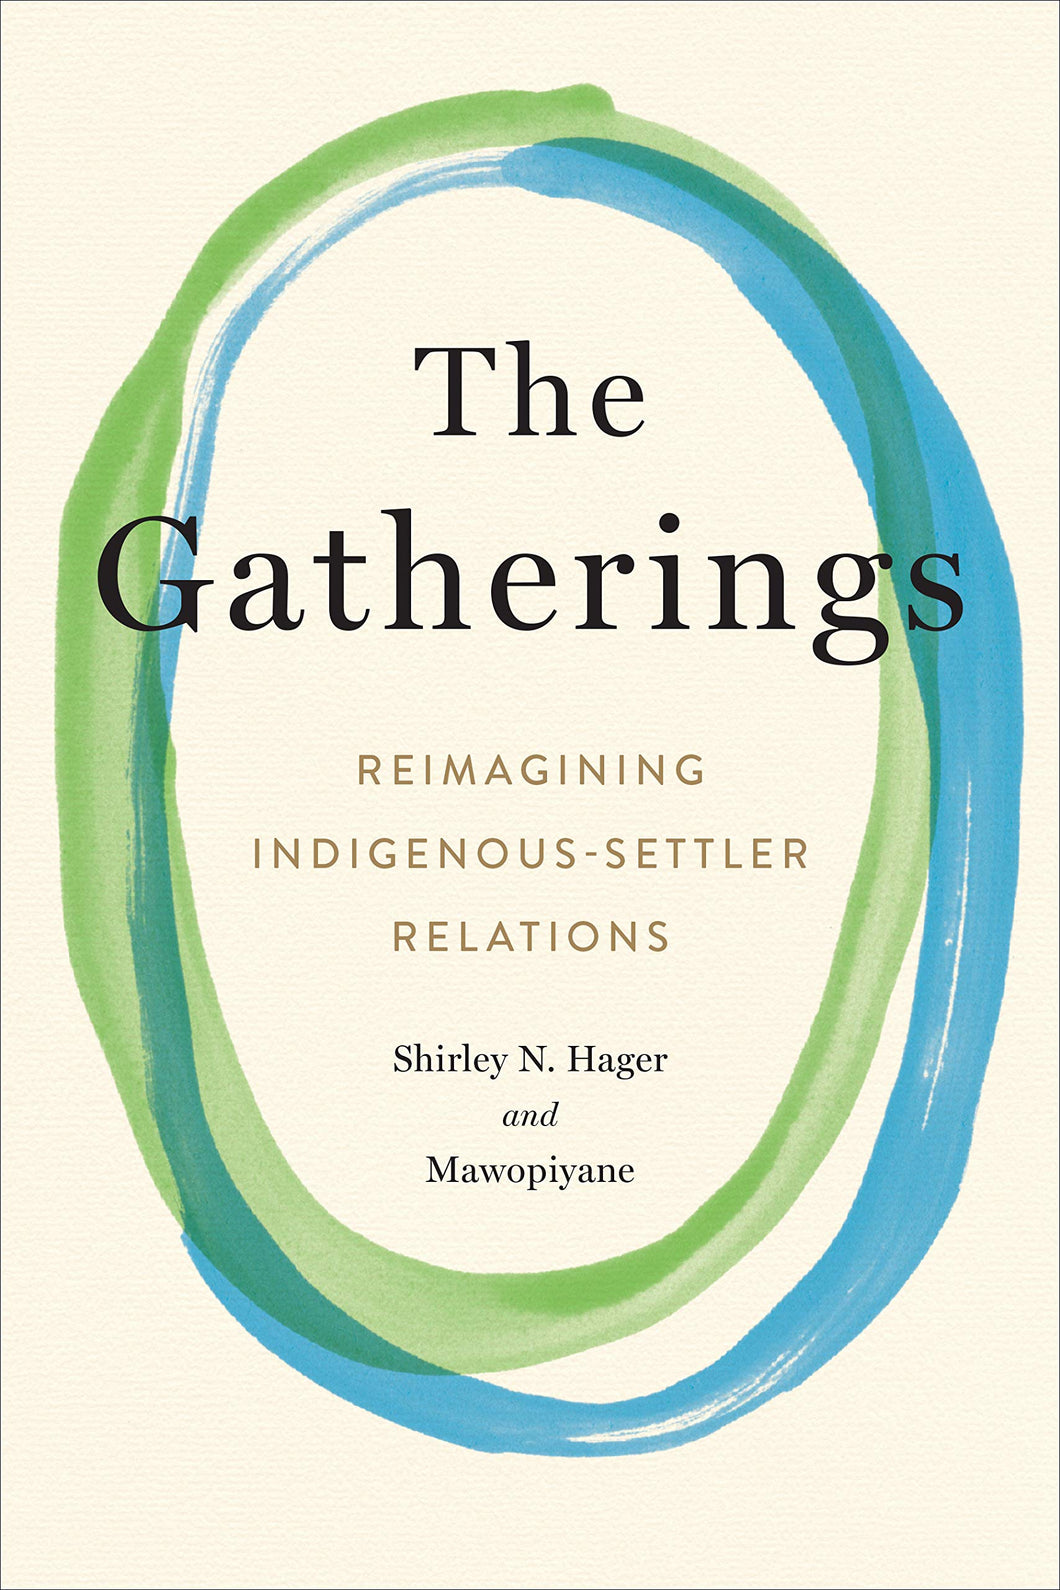 The Gatherings: Reimagining Indigenous-Settler Relations [Shirley Hager & Mawopiyane]